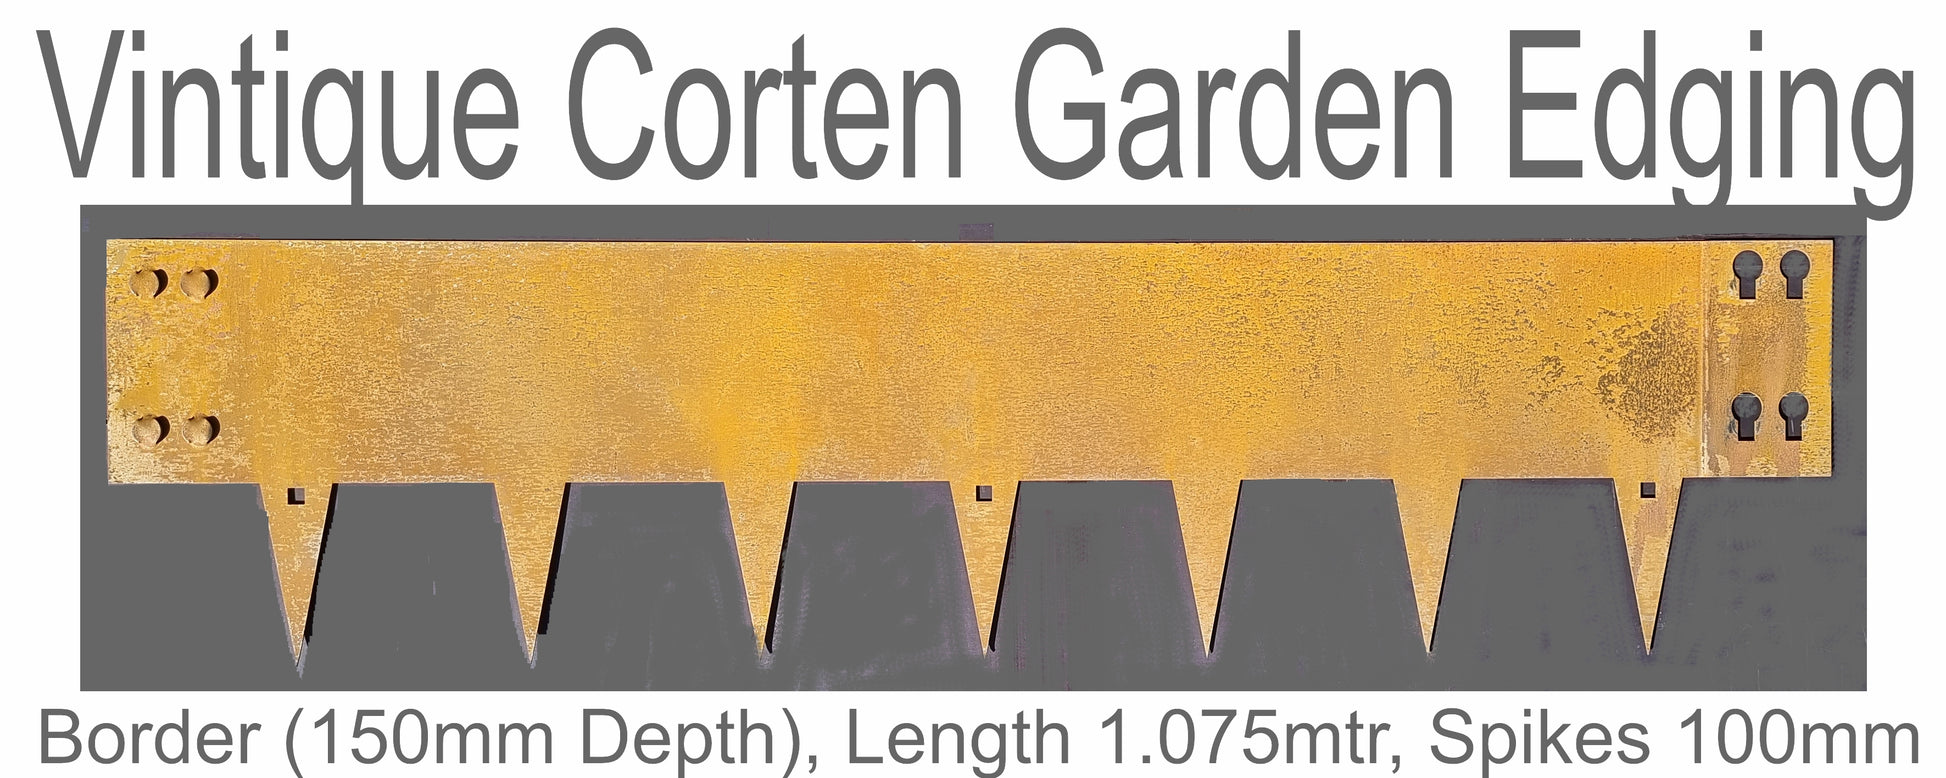 Corten Rusted Garden Edging 150mm x 1.075mtr length - Da Vinci Chalk Paint & Rustic home decor